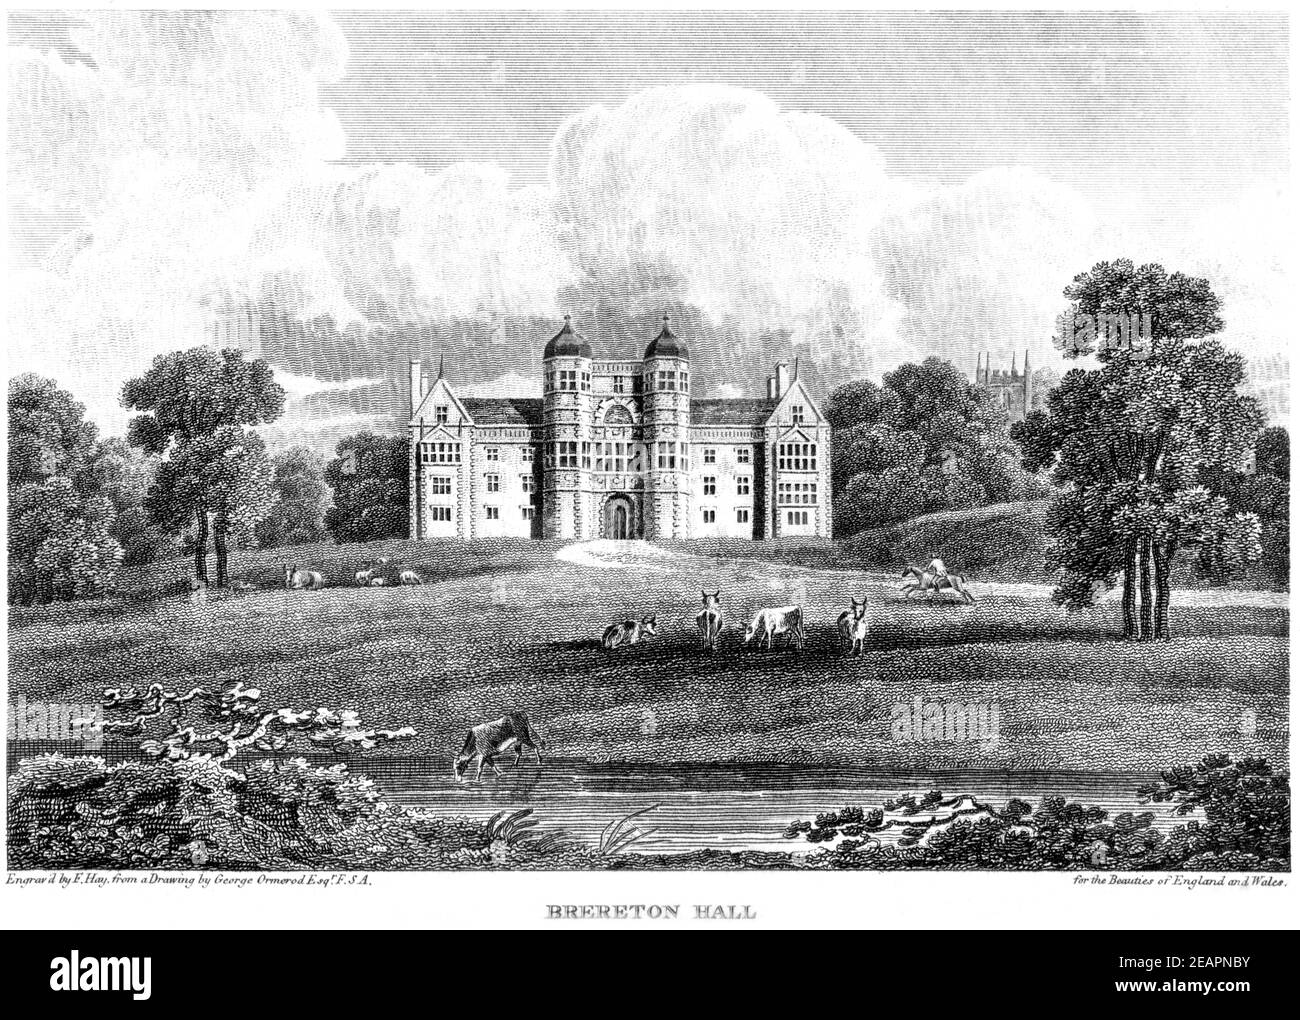 Ein Stich von Brereton Hall, Cheshire, gescannt in hoher Auflösung von einem Buch gedruckt im Jahr 1812. Für urheberrechtlich frei gehalten. Stockfoto